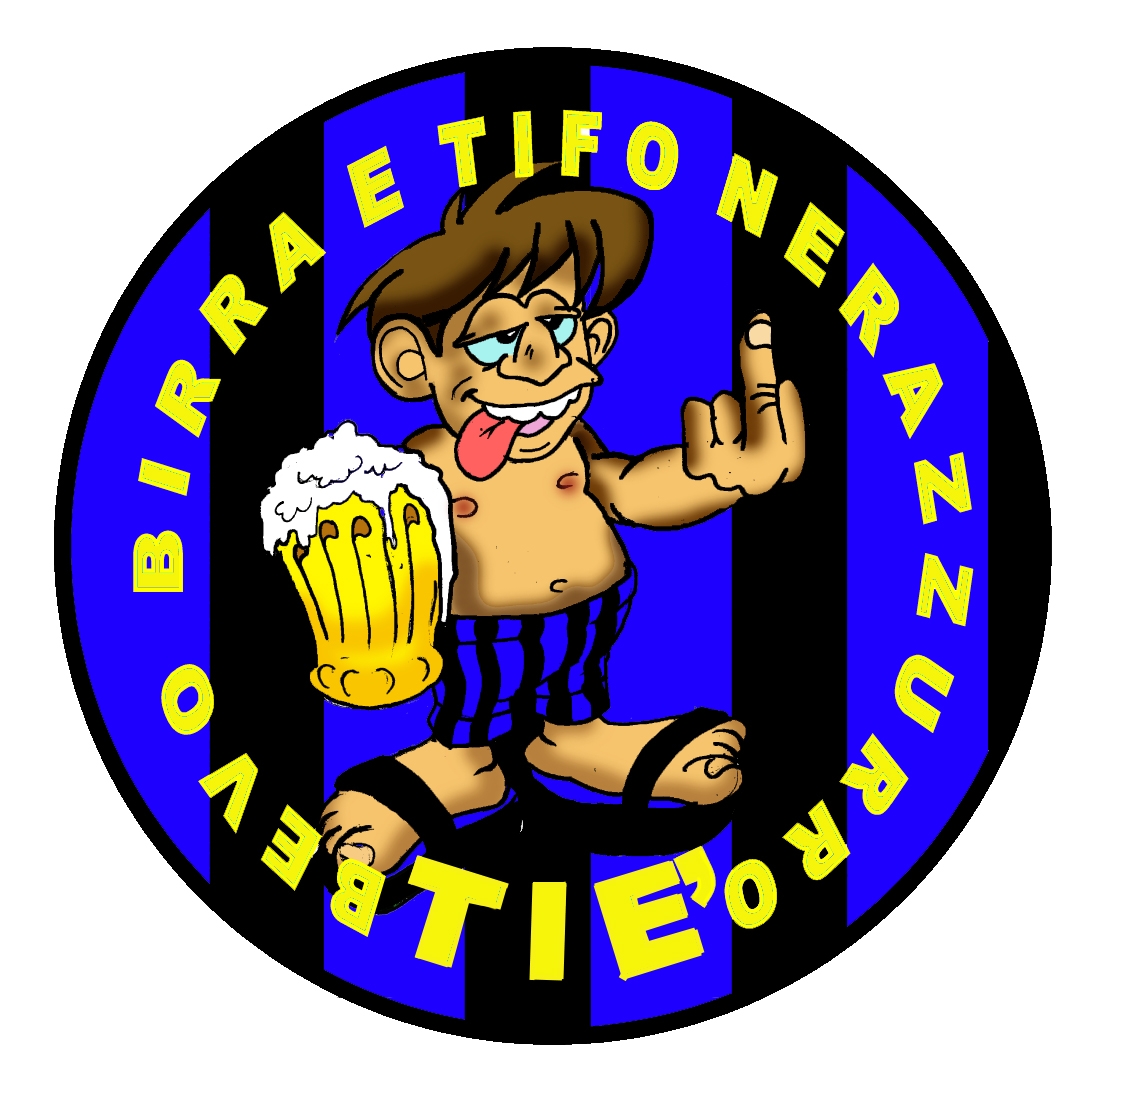 99-08-01-2608 Adesivi Nero Azzurri Bevo Birra e Tifo Nerazzurro CONFEZIONI da 10